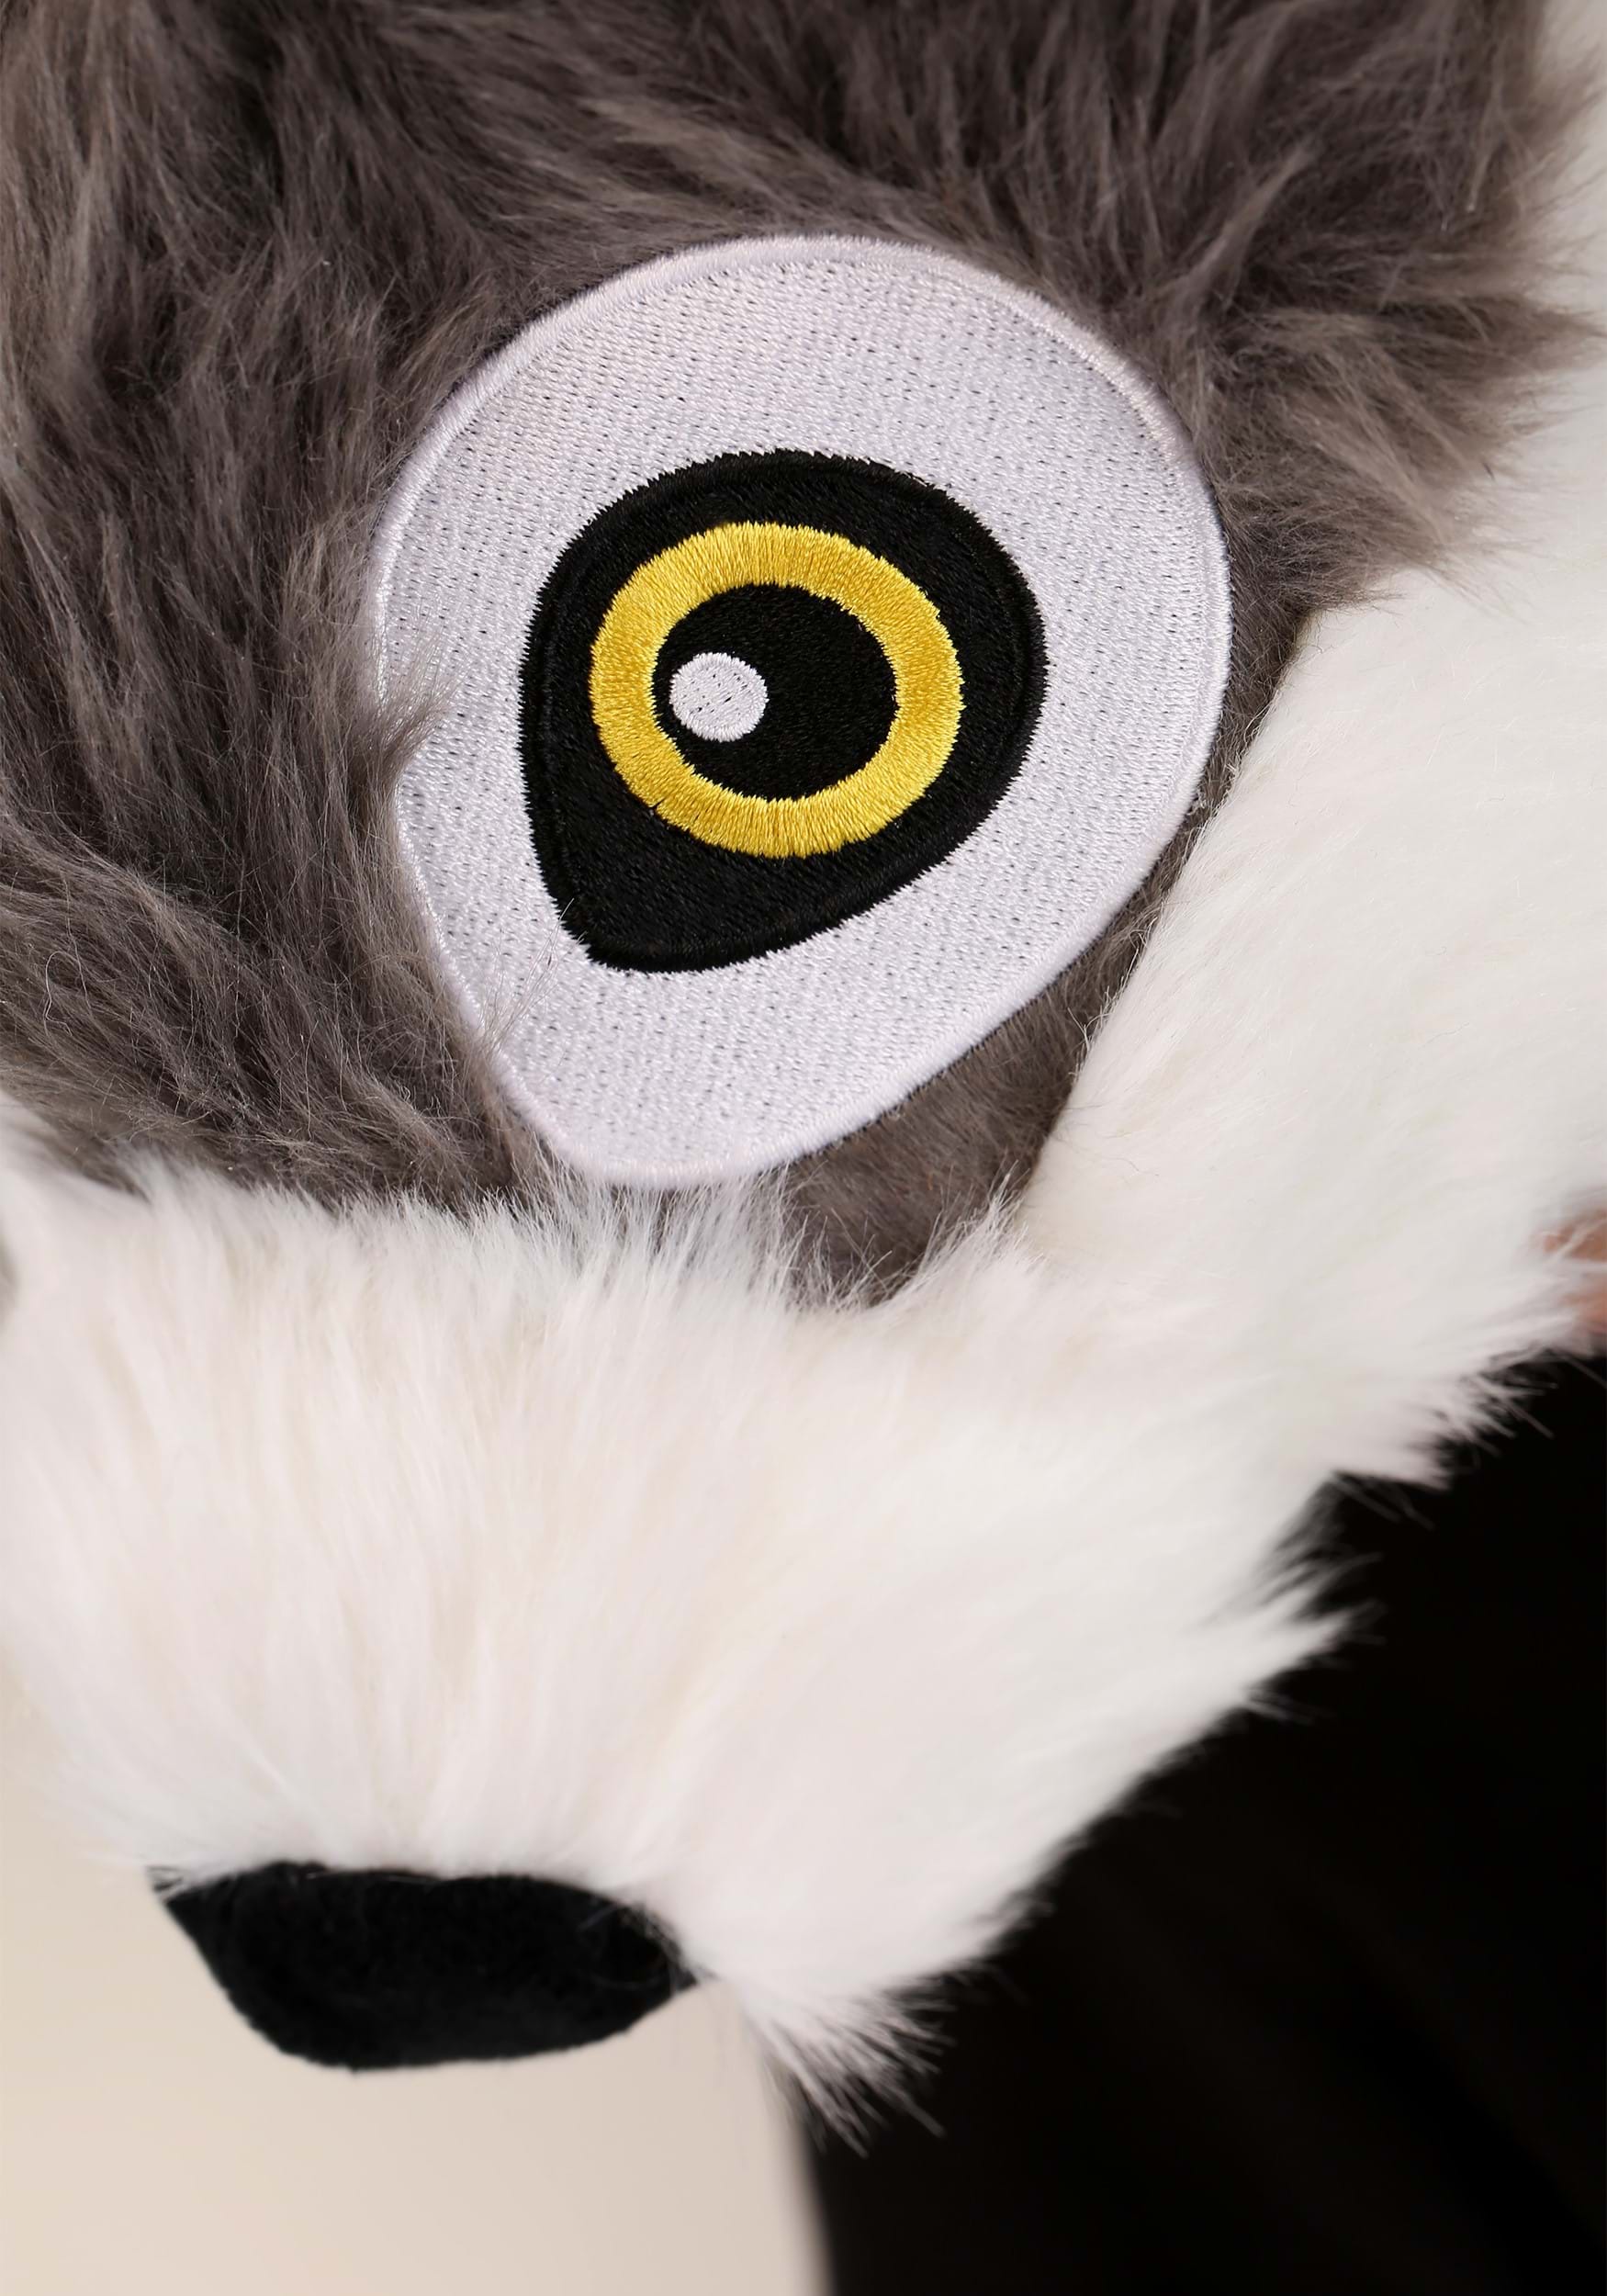 Wolf Plush Headband & Tail Kit